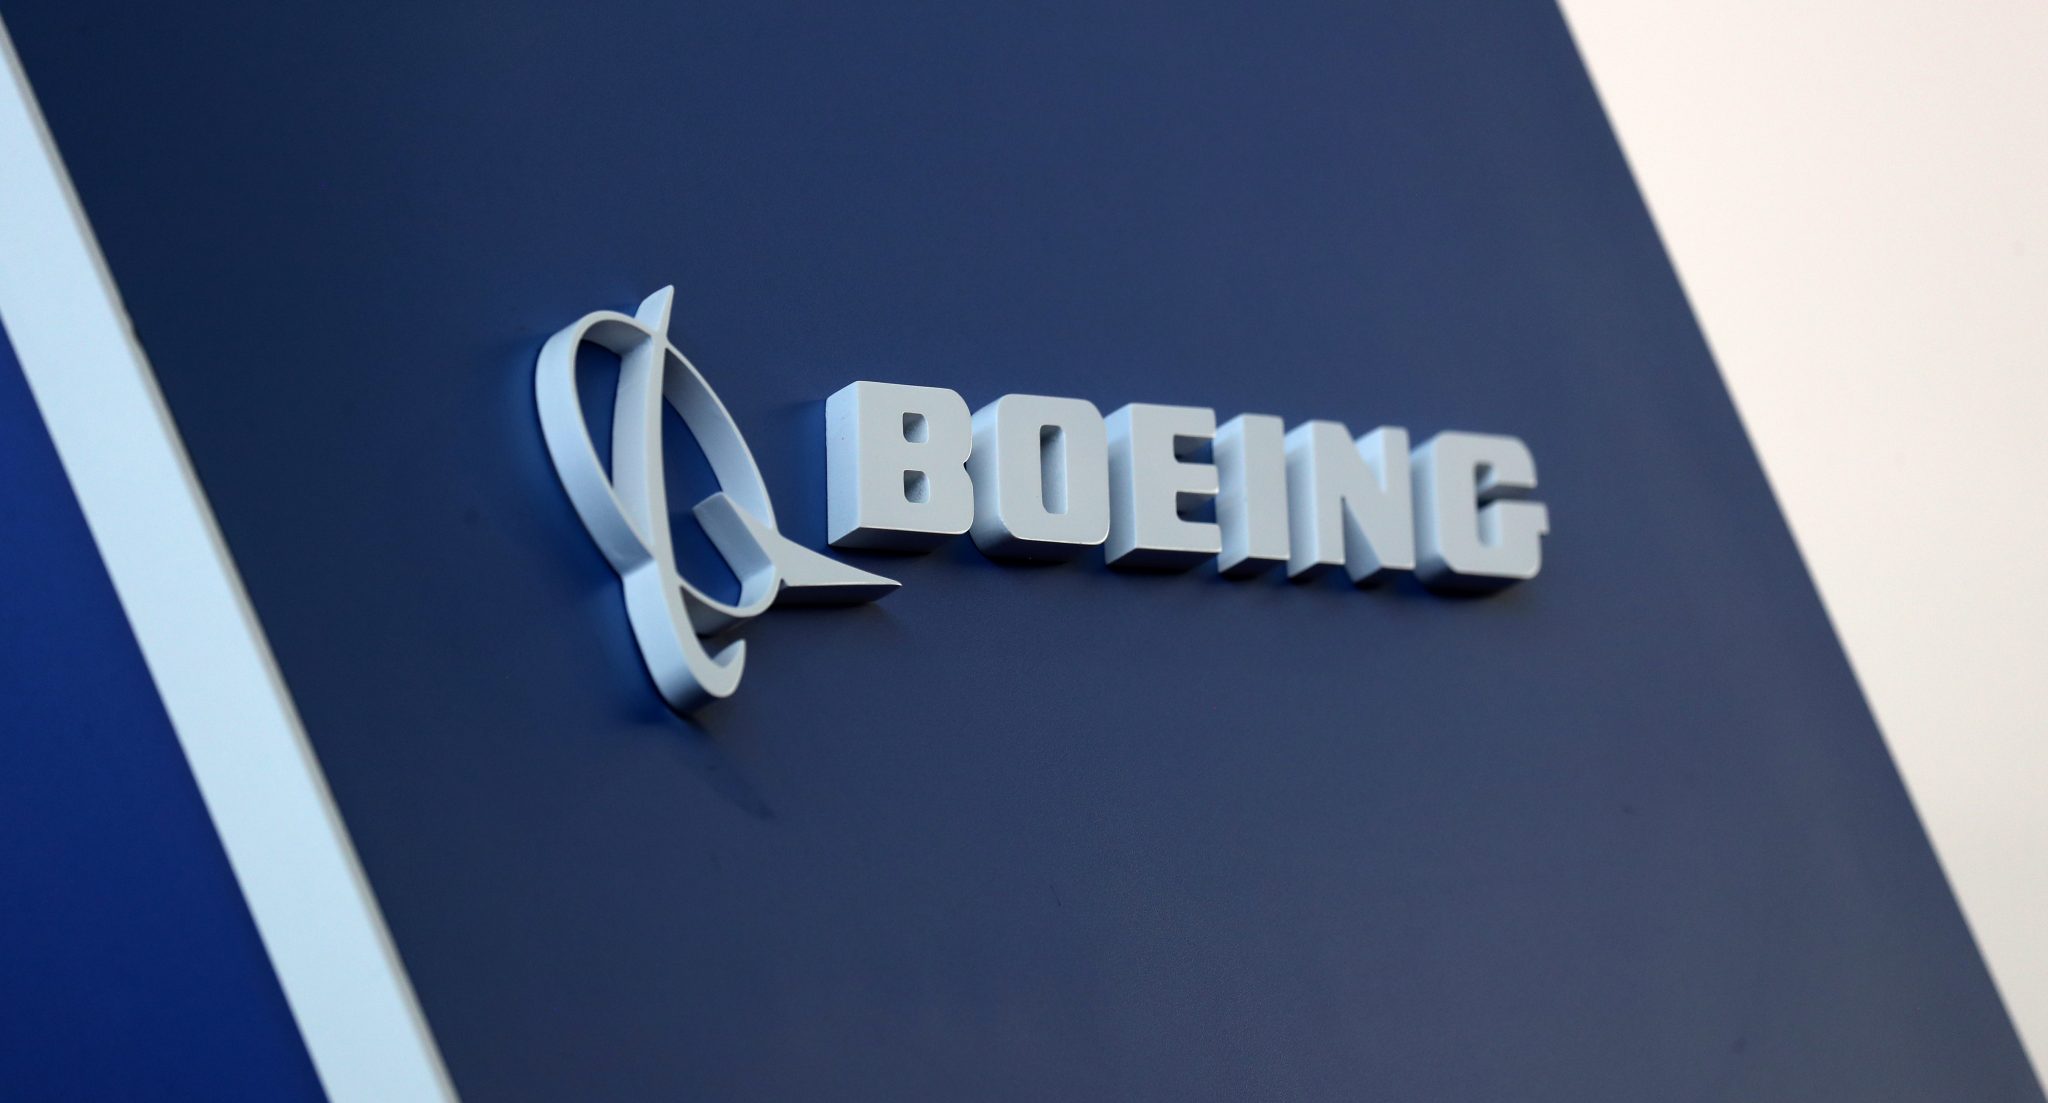 Oferta da Boeing para unidade da Embraer enfrenta investigação da UE, dizem fontes